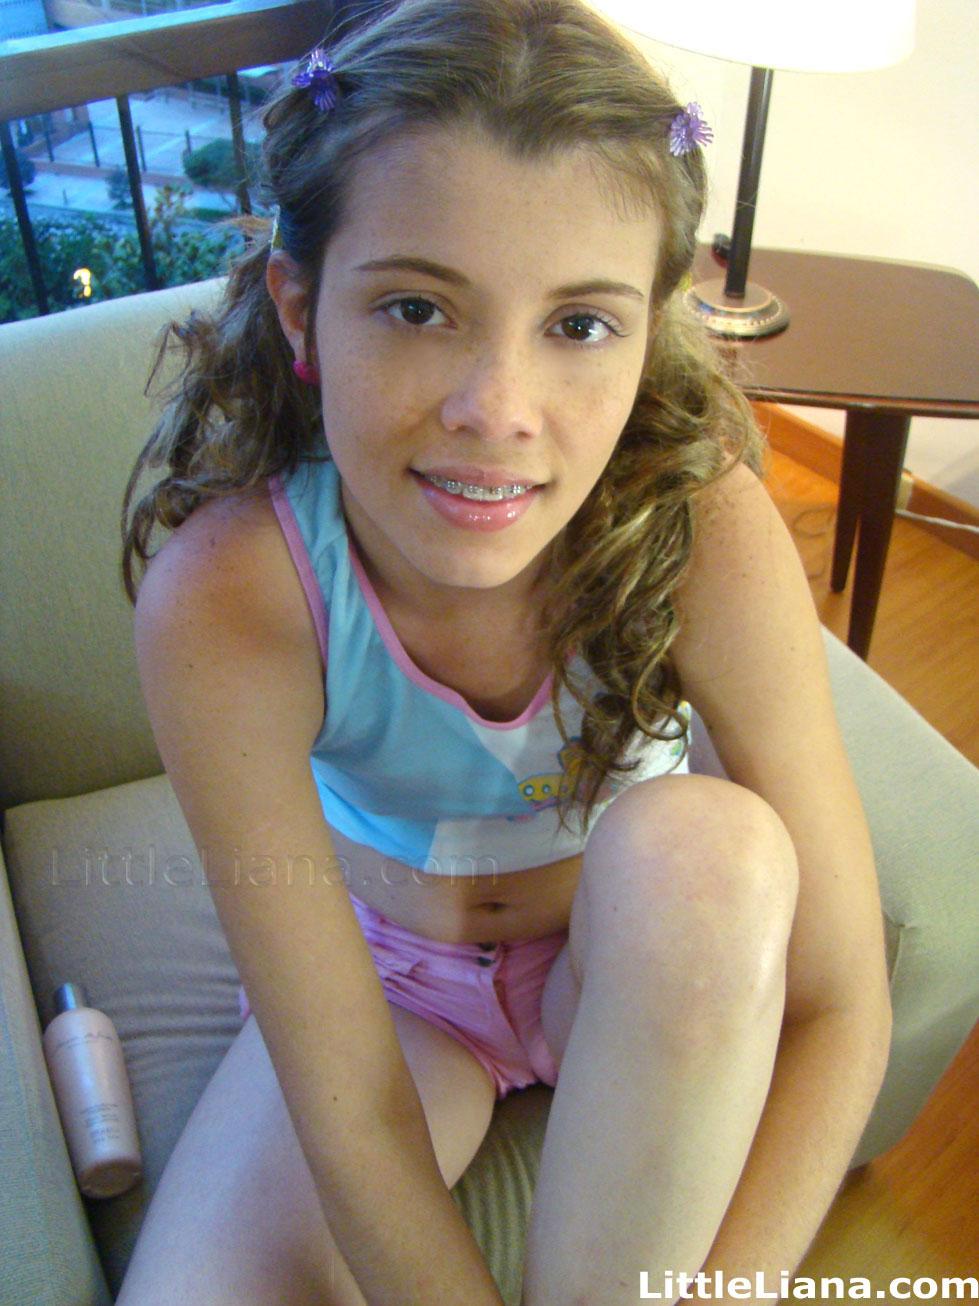 Bilder von Teenager-Mädchen kleine liana hängen zu Hause
 #59023237